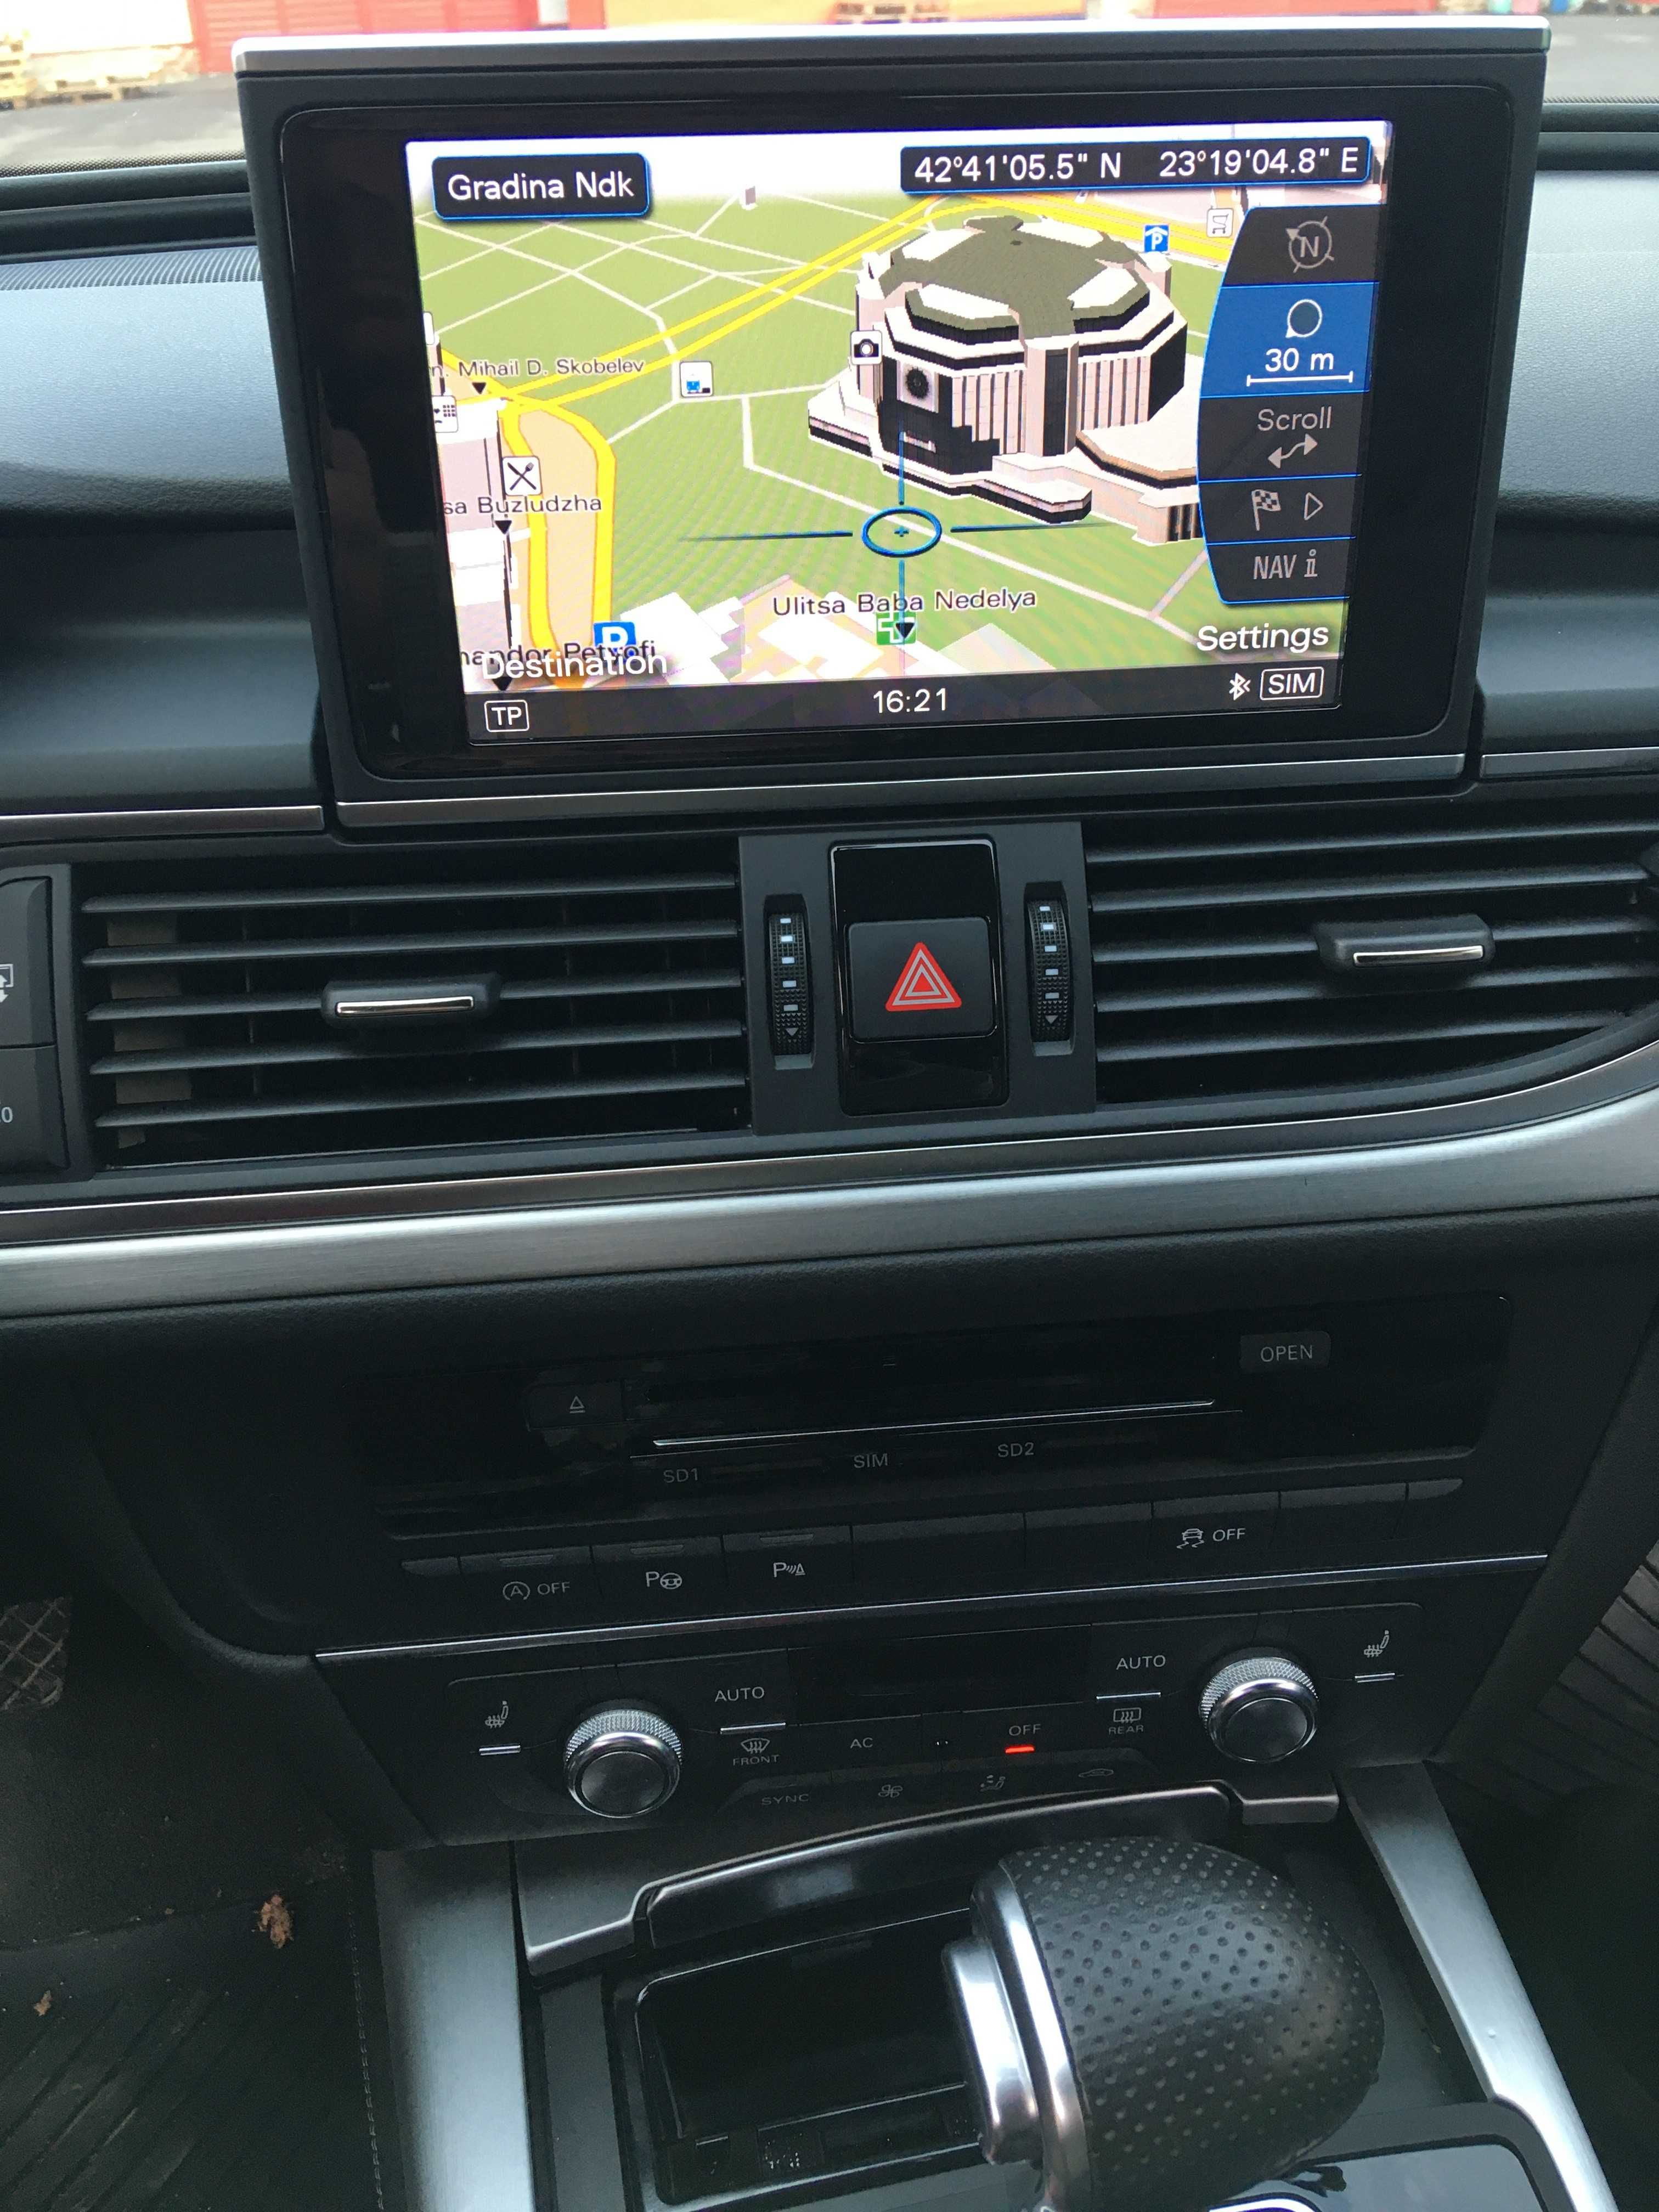 Converted Audi Mmi 3g hdd 3gPlus Us to EU Конвертиране АМЕРИКА ЕВРОПА